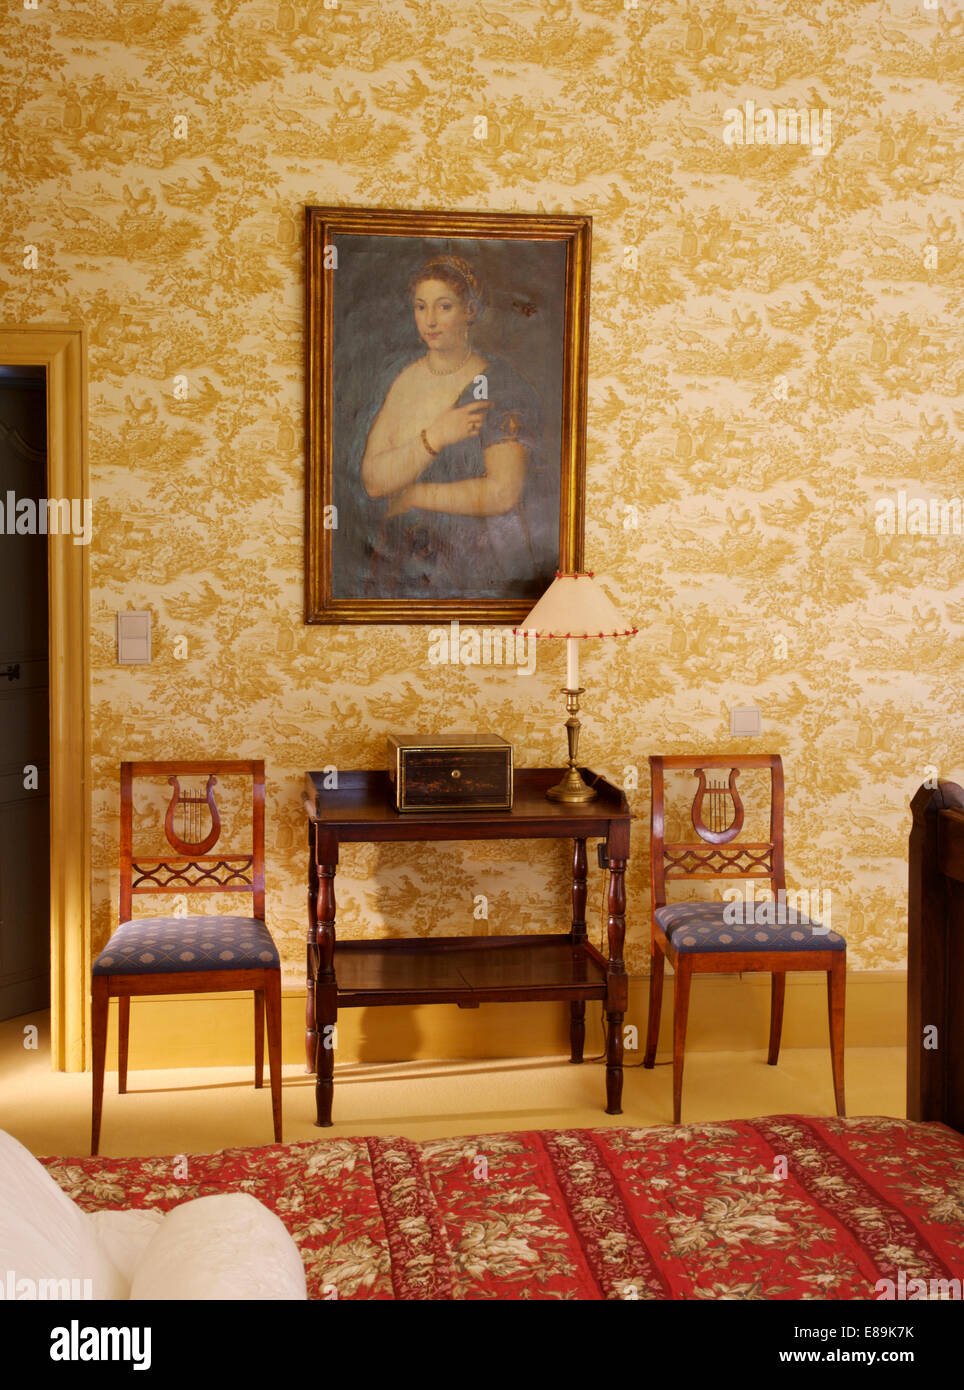 Große Porträt an Wand über antike Konsole Tisch und Stühle im Land Schlafzimmer mit neutralen Toile De Jouy Tapete Stockfoto